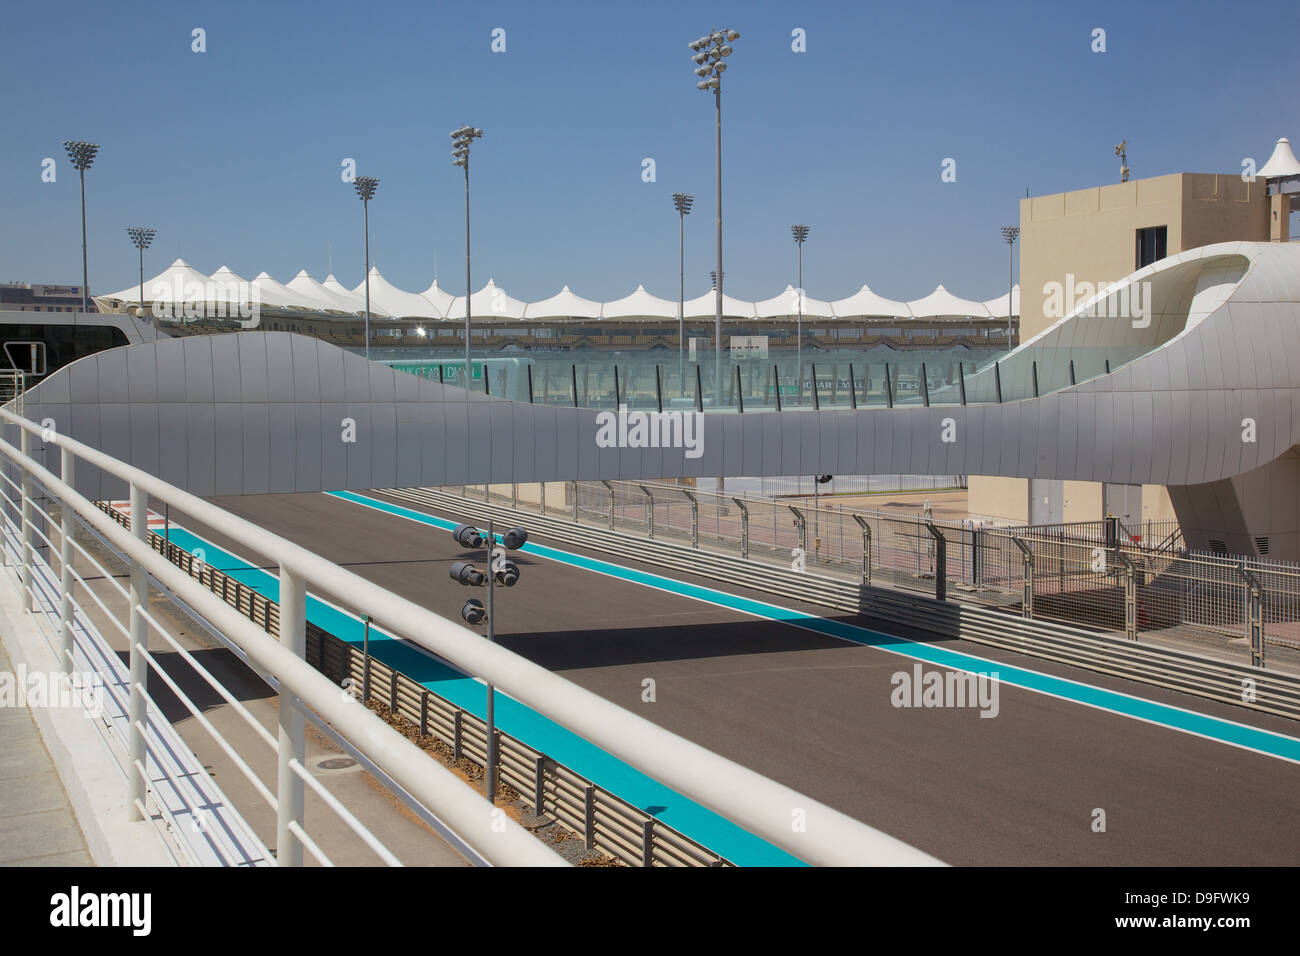 Courses de formule 1, Yas Island, Abu Dhabi, Émirats arabes unis, Moyen Orient Banque D'Images